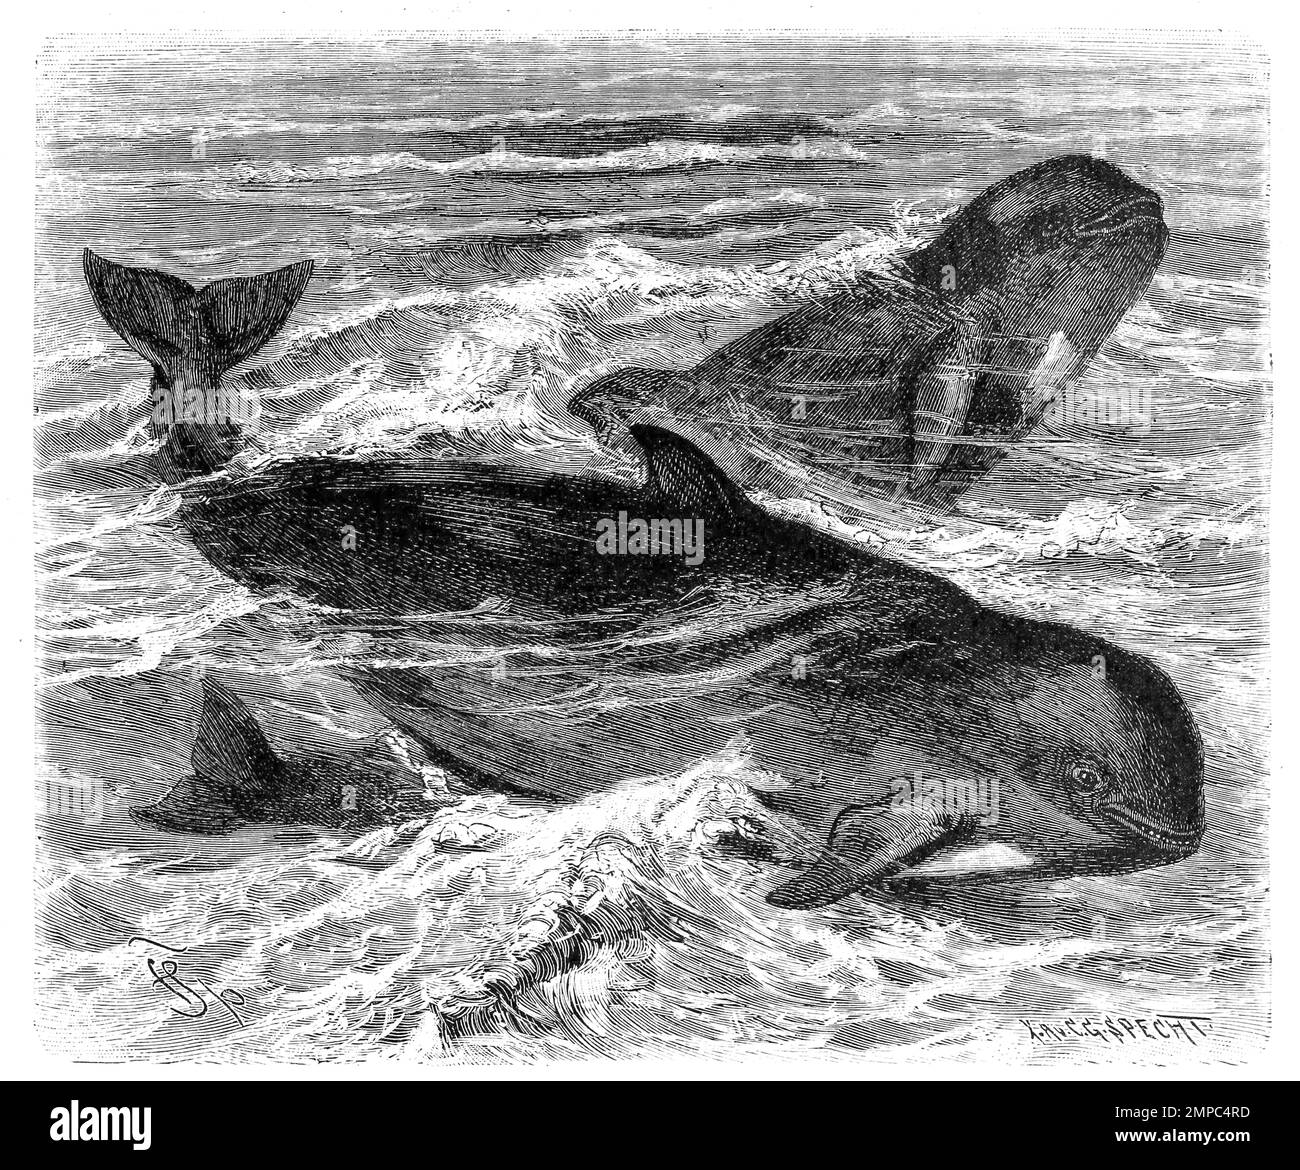 Grindwal, Globicephala melas, Pilotwal oder Calderon-Delfin, eine Art der Delfine, Historisch, digital restaurierte Reproduktion von einer Vorlage aus dem 18. Jahrhundert, Stock Photo